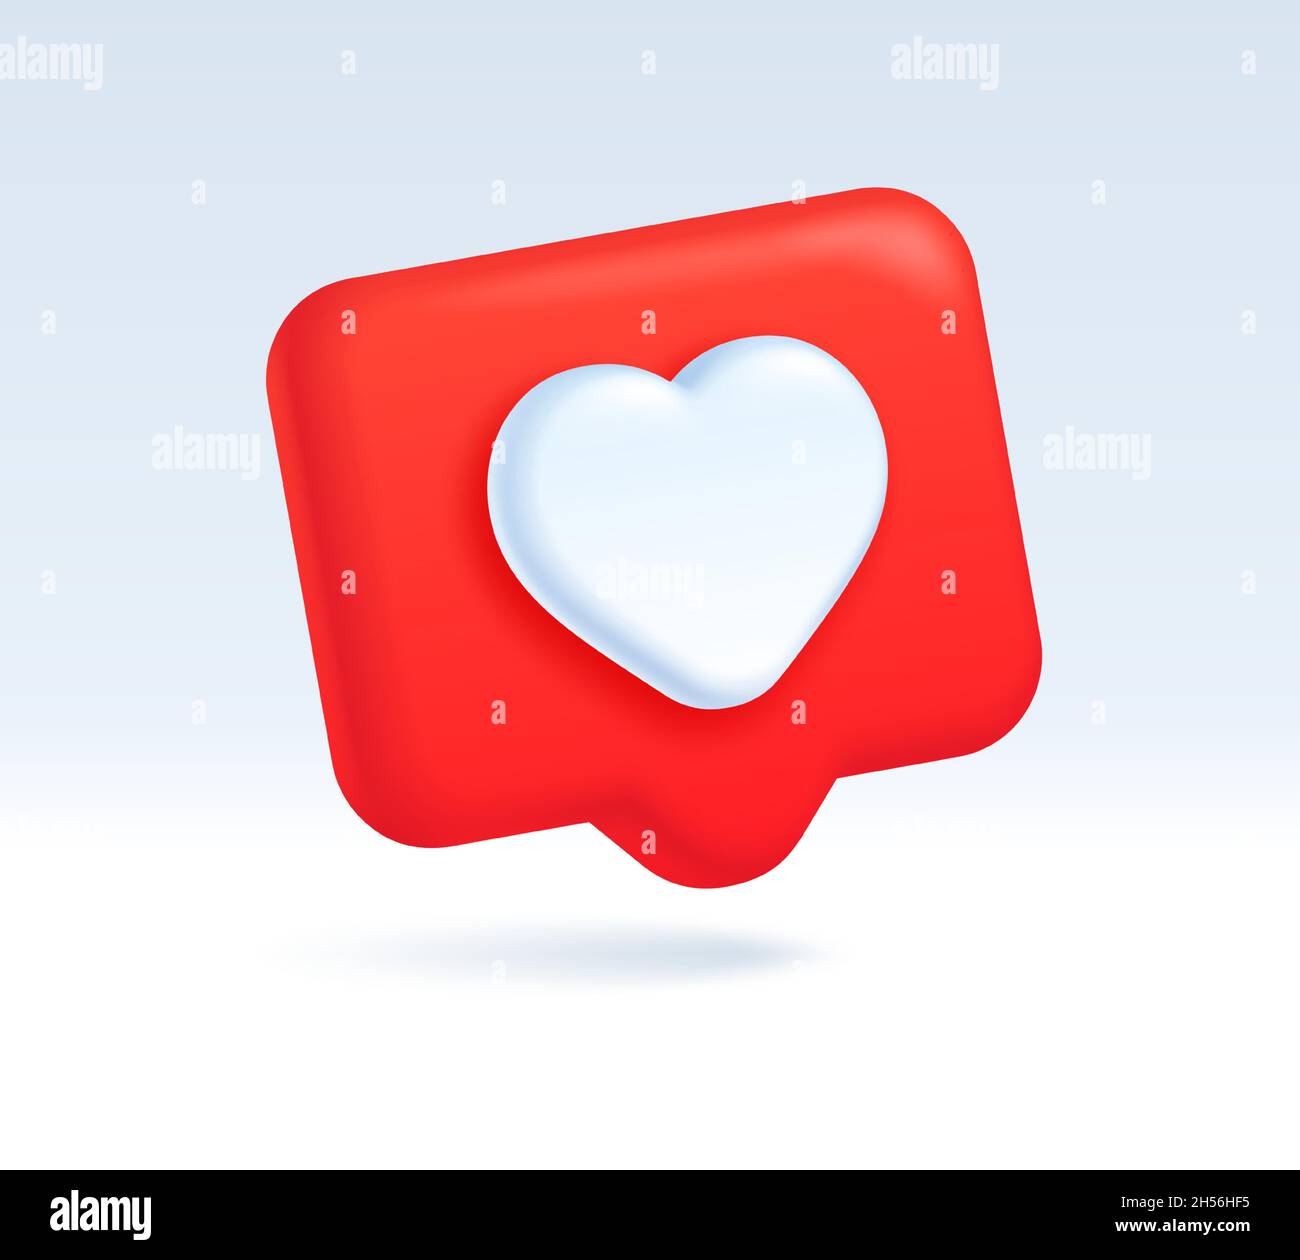 Biểu tượng Lời nói đỏ với trái tim trên mạng xã hội sẽ làm cho bạn muốn thể hiện tình cảm của mình với người thân yêu ngay lập tức. Hãy để những yêu thương được truyền đi bằng cách xem ngay!